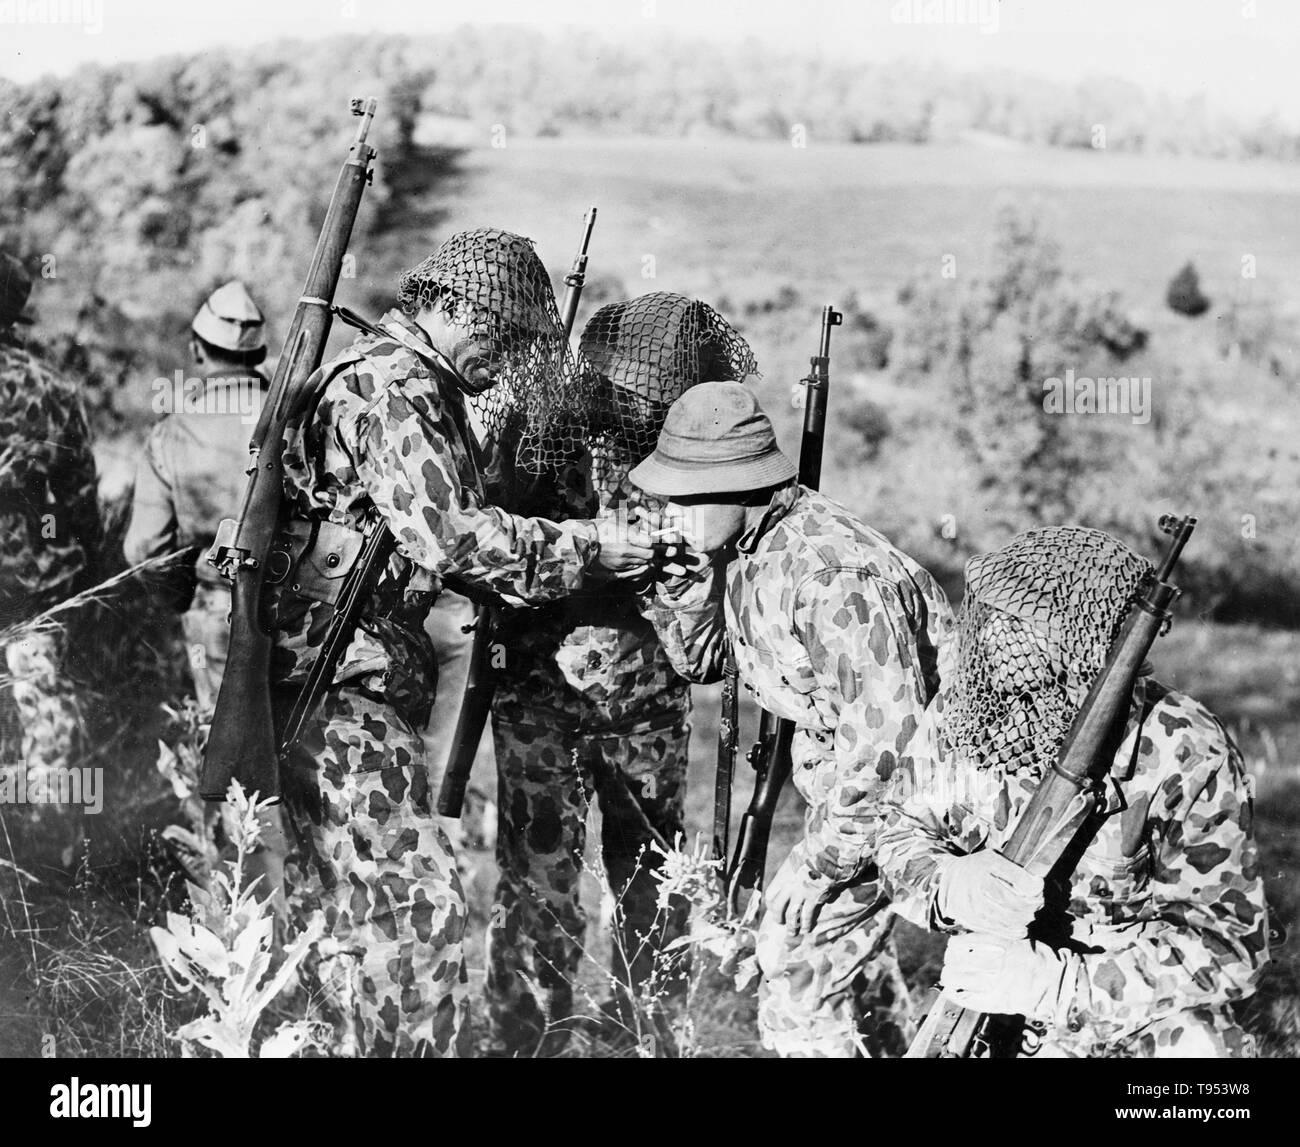 Us-Soldaten im Zweiten Weltkrieg tragen Uniformen getarnt in die Landschaft einfügt und Netze ihre Helme zu verbergen, C. 1942. Stockfoto